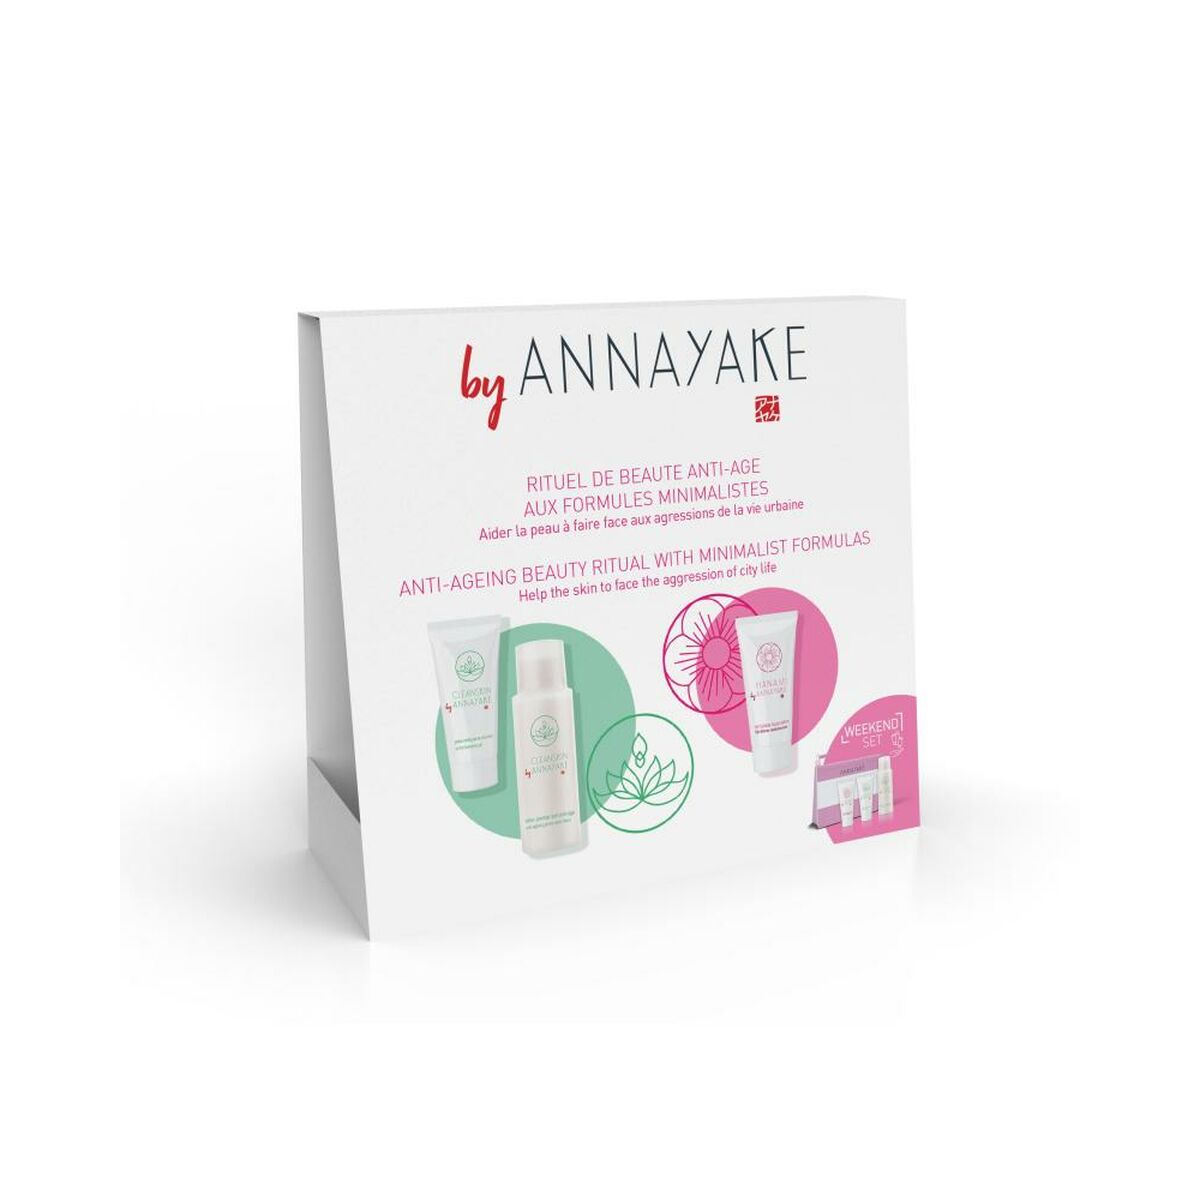 Kaufe Unisex-Kosmetik-Set Annayake Hanami 3 Stk. bei AWK Flagship um € 51.00